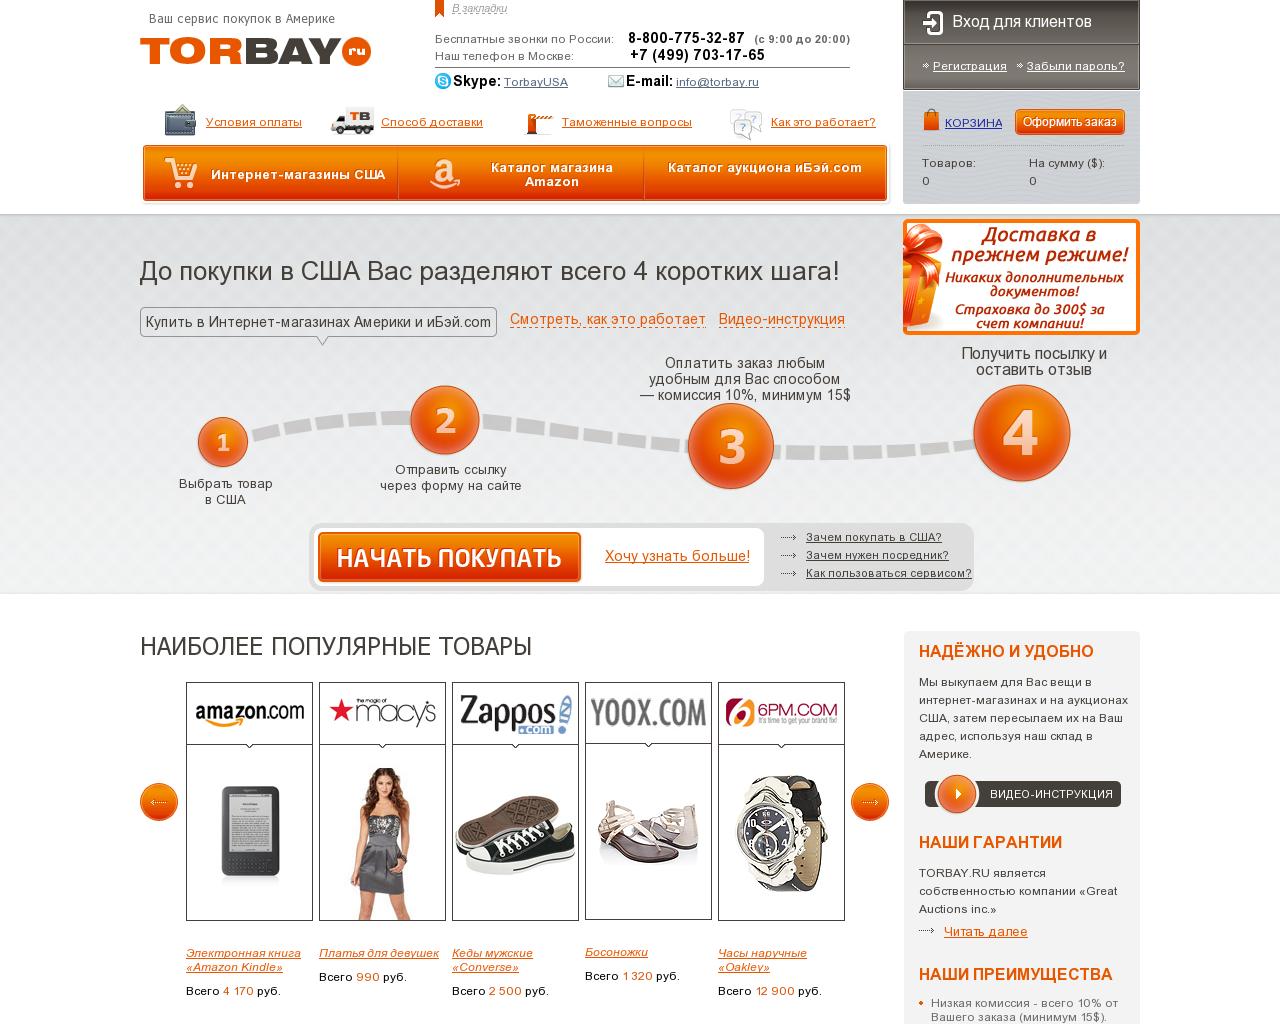 Изображение сайта torbay.ru в разрешении 1280x1024